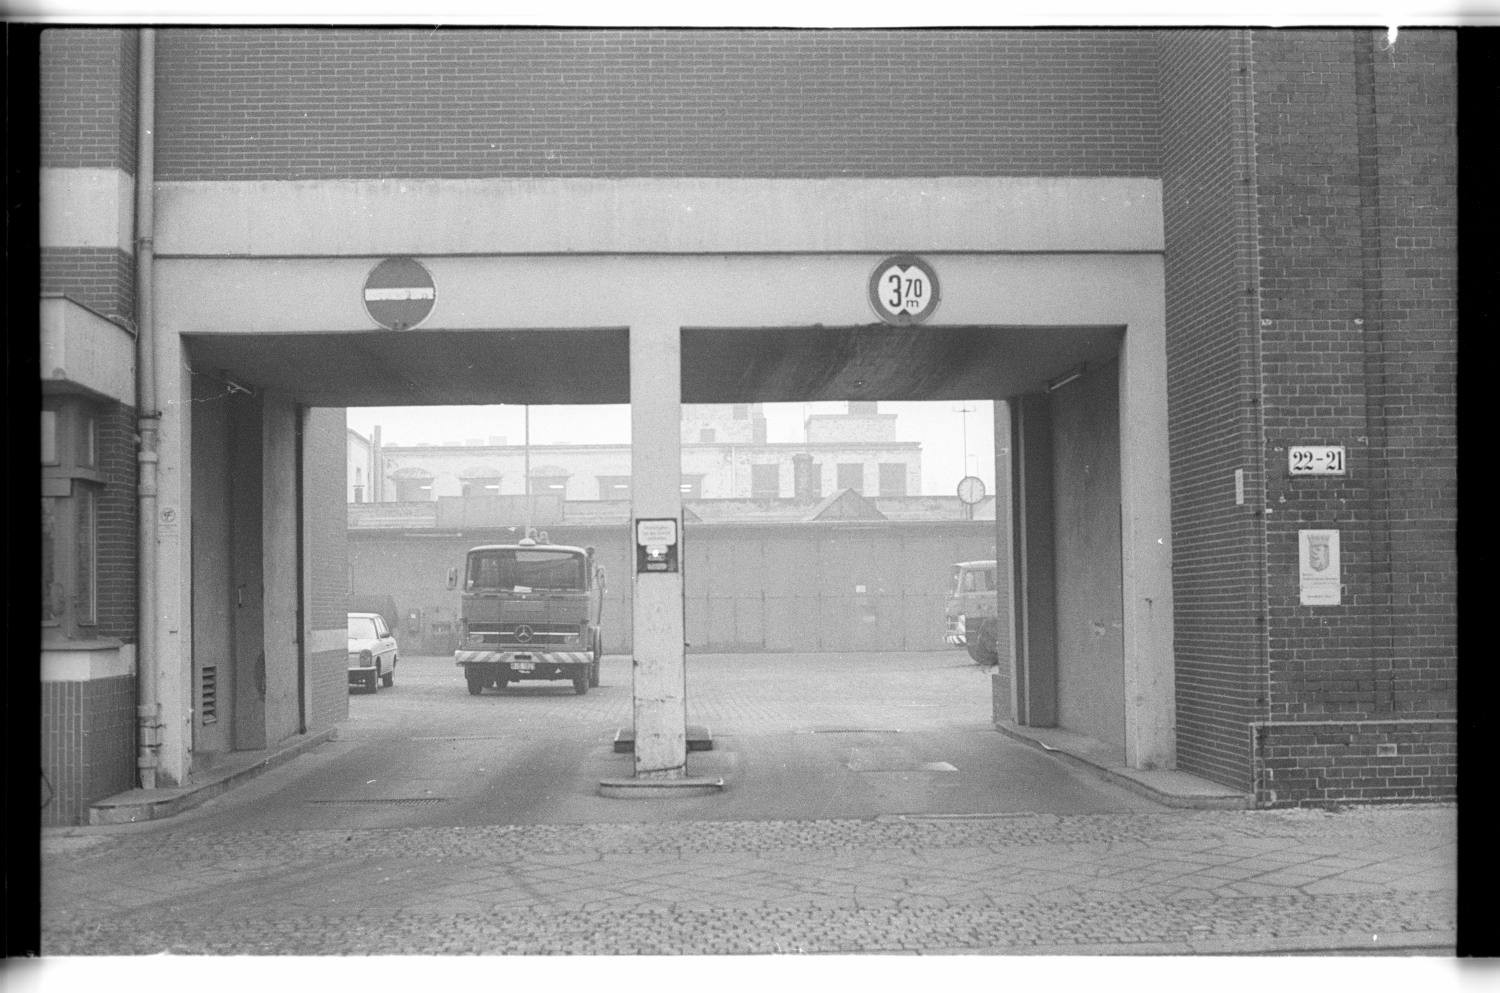 Kleinbildnegative: BSR, Kärntener Straße und Naumannstraße, 1980 (Museen Tempelhof-Schöneberg/Jürgen Henschel RR-F)